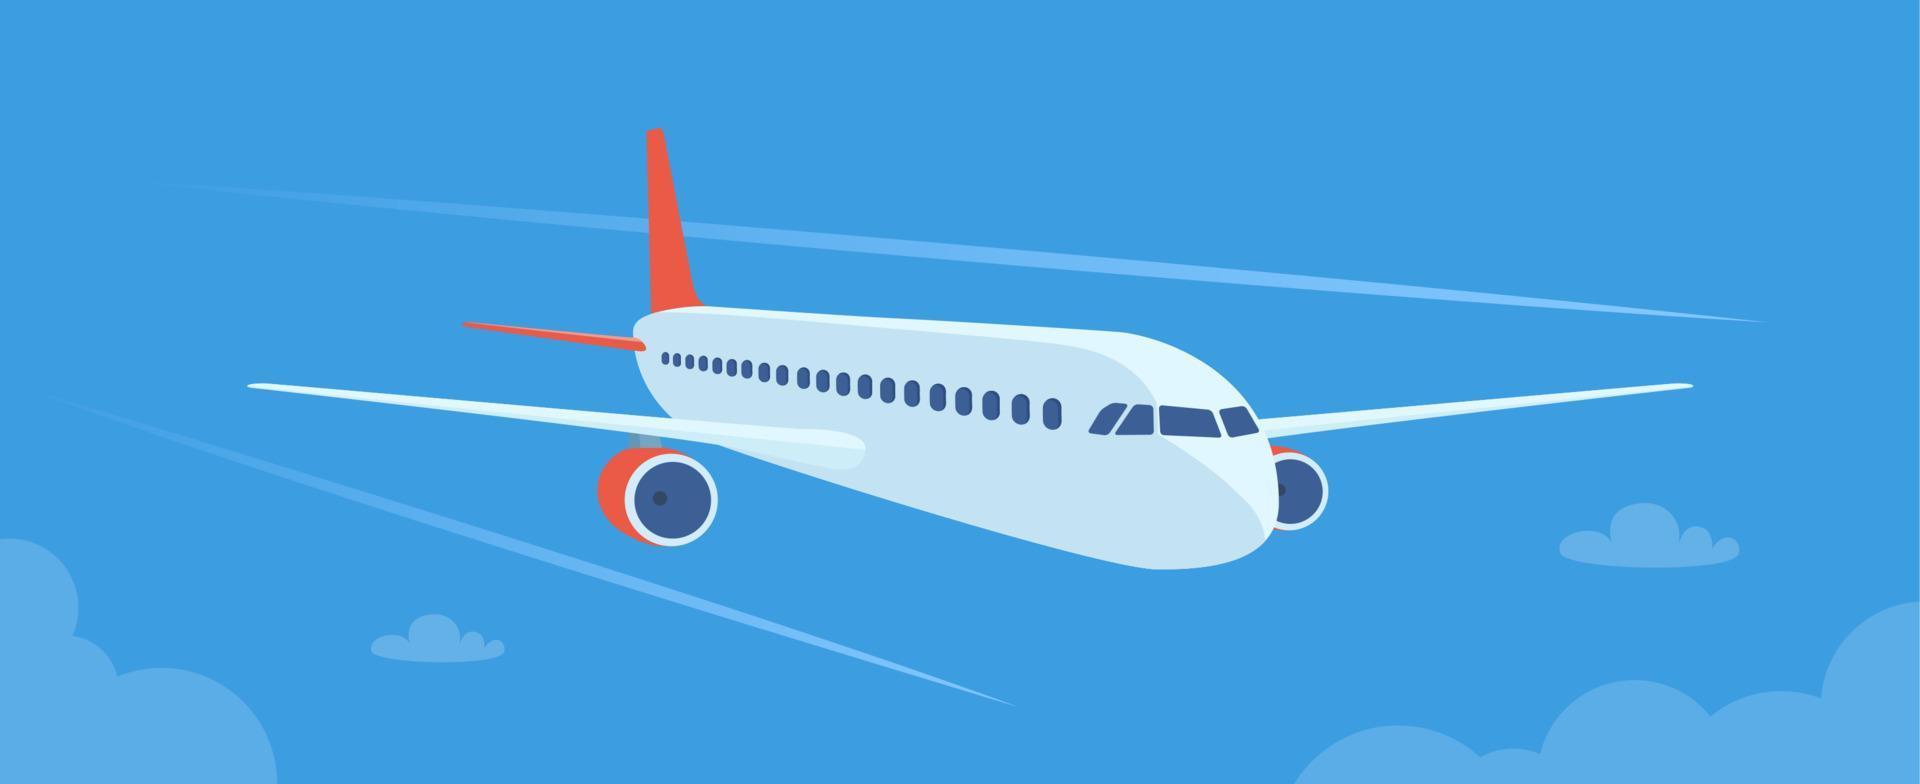 vliegend vlak bovenstaand de wolken. vliegtuig in de lucht. reizen concept illustratie voor reclame luchtvaartmaatschappij, website naar zoeken voor lucht kaartjes, reizen bureau. op reis folder, banier, vector illustratie.